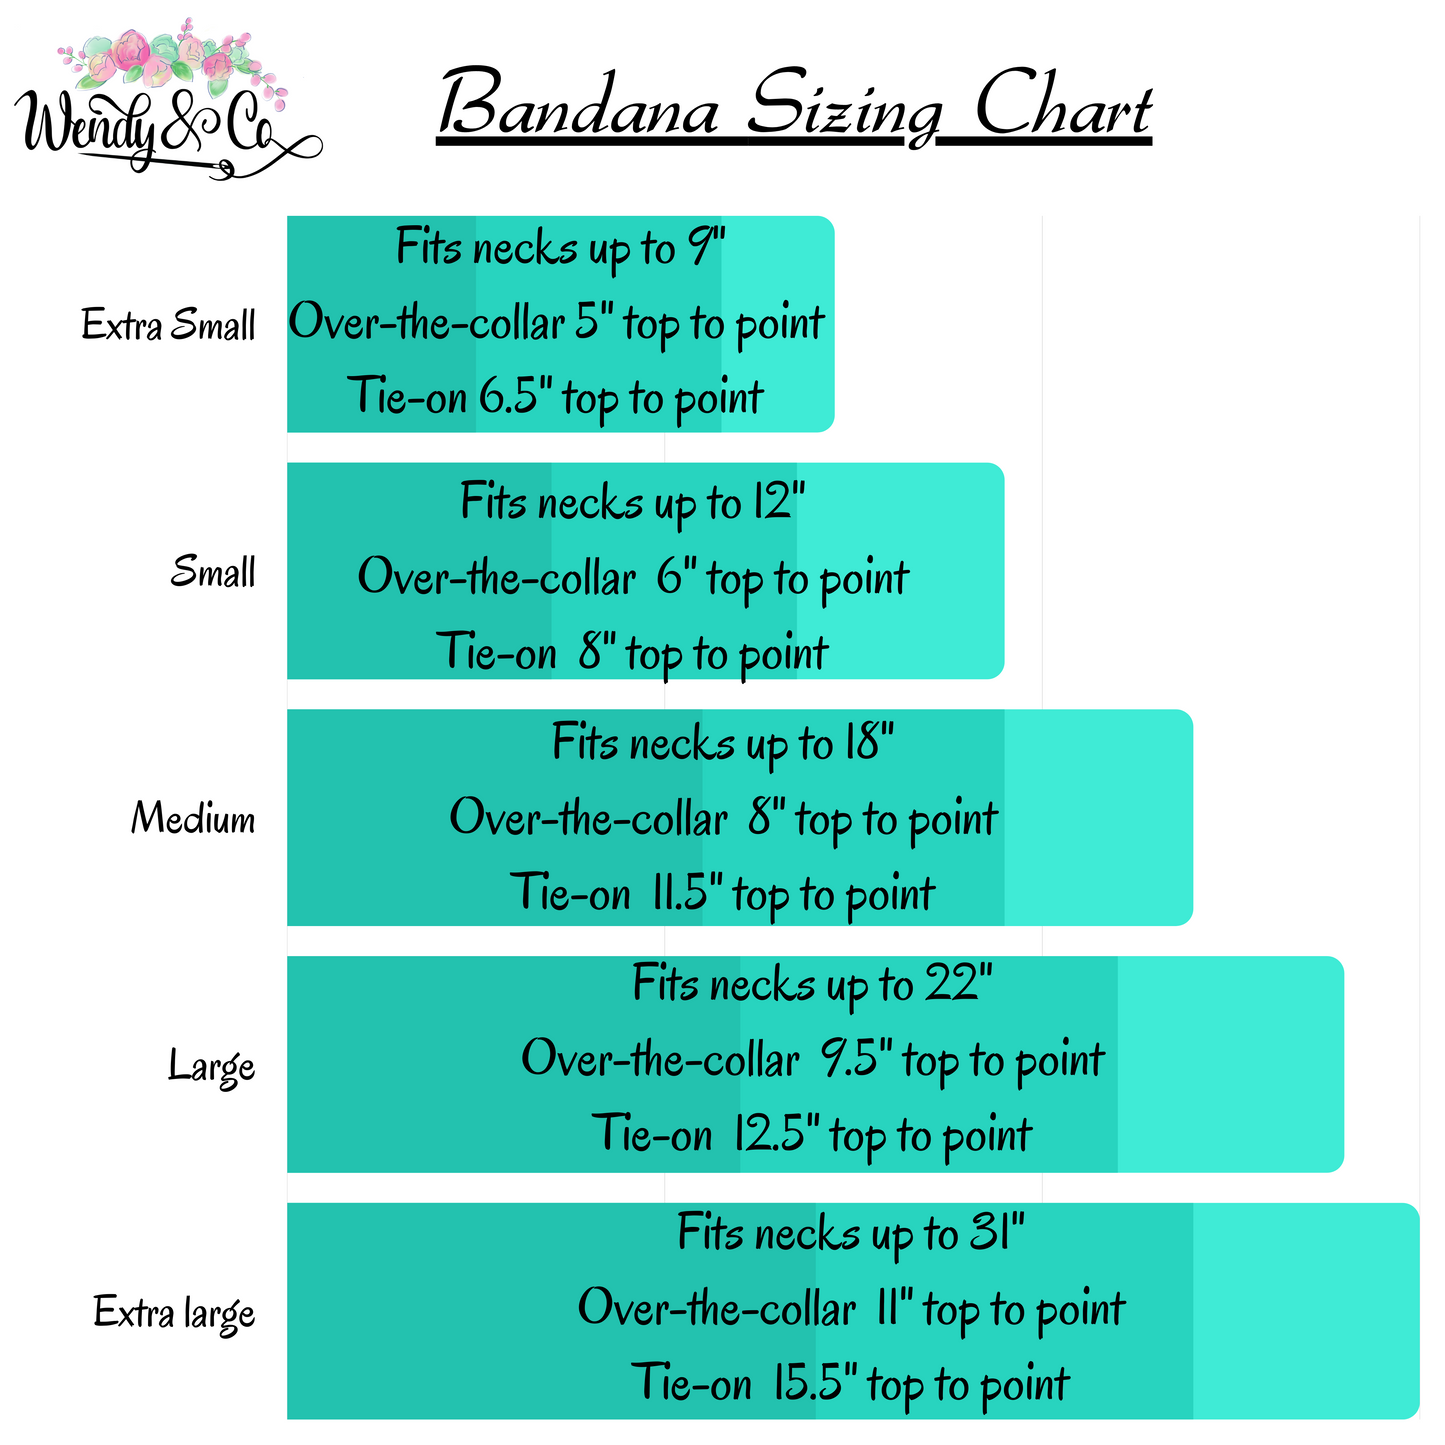 Size chart for bandana.